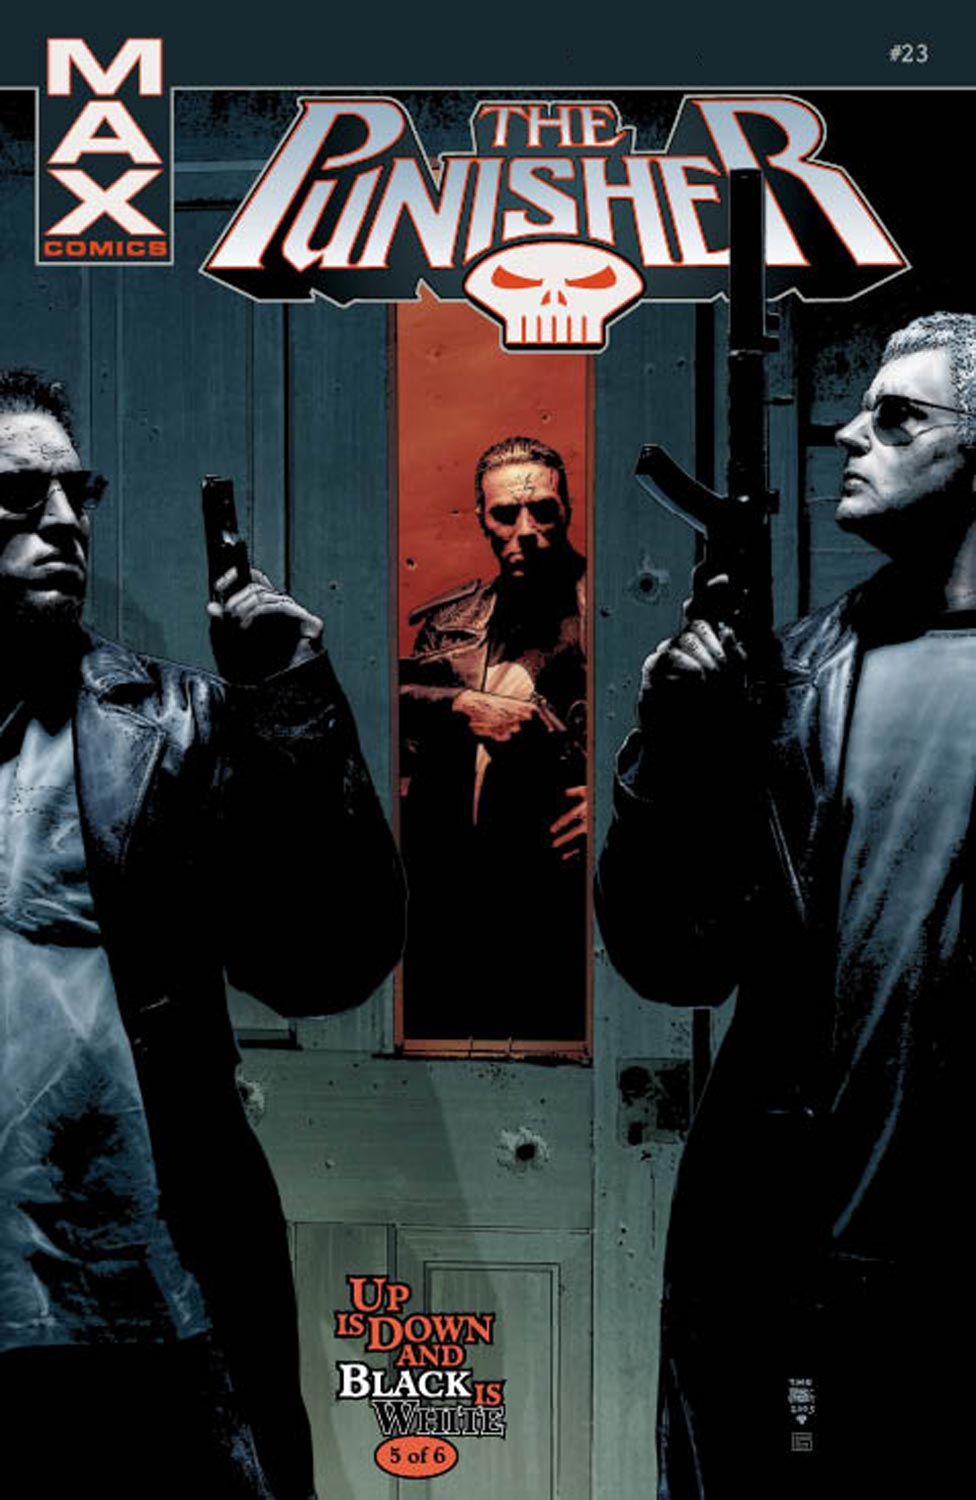 Punisher Max (2004) #23